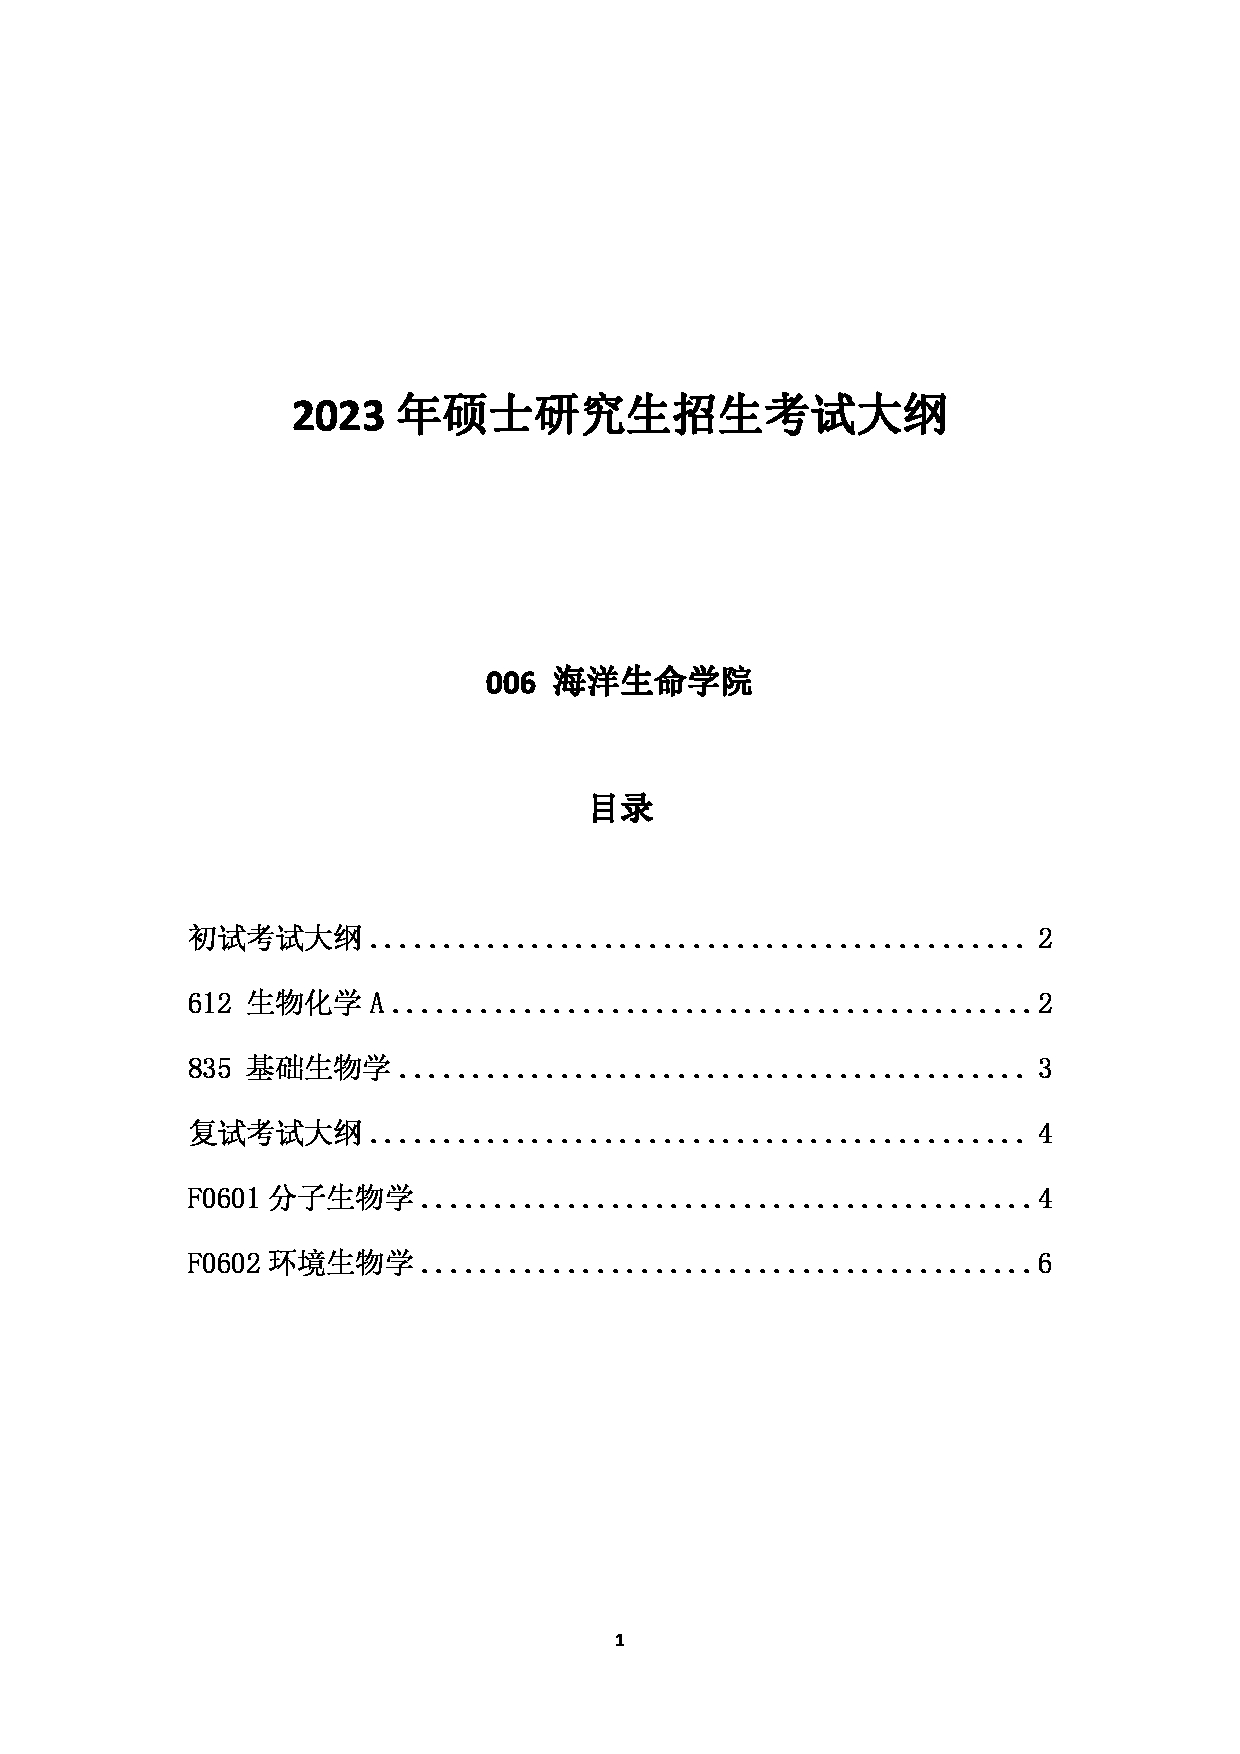 2023考研大纲：中国海洋大学2023年考研 006海洋生命学院 考试大纲第1页